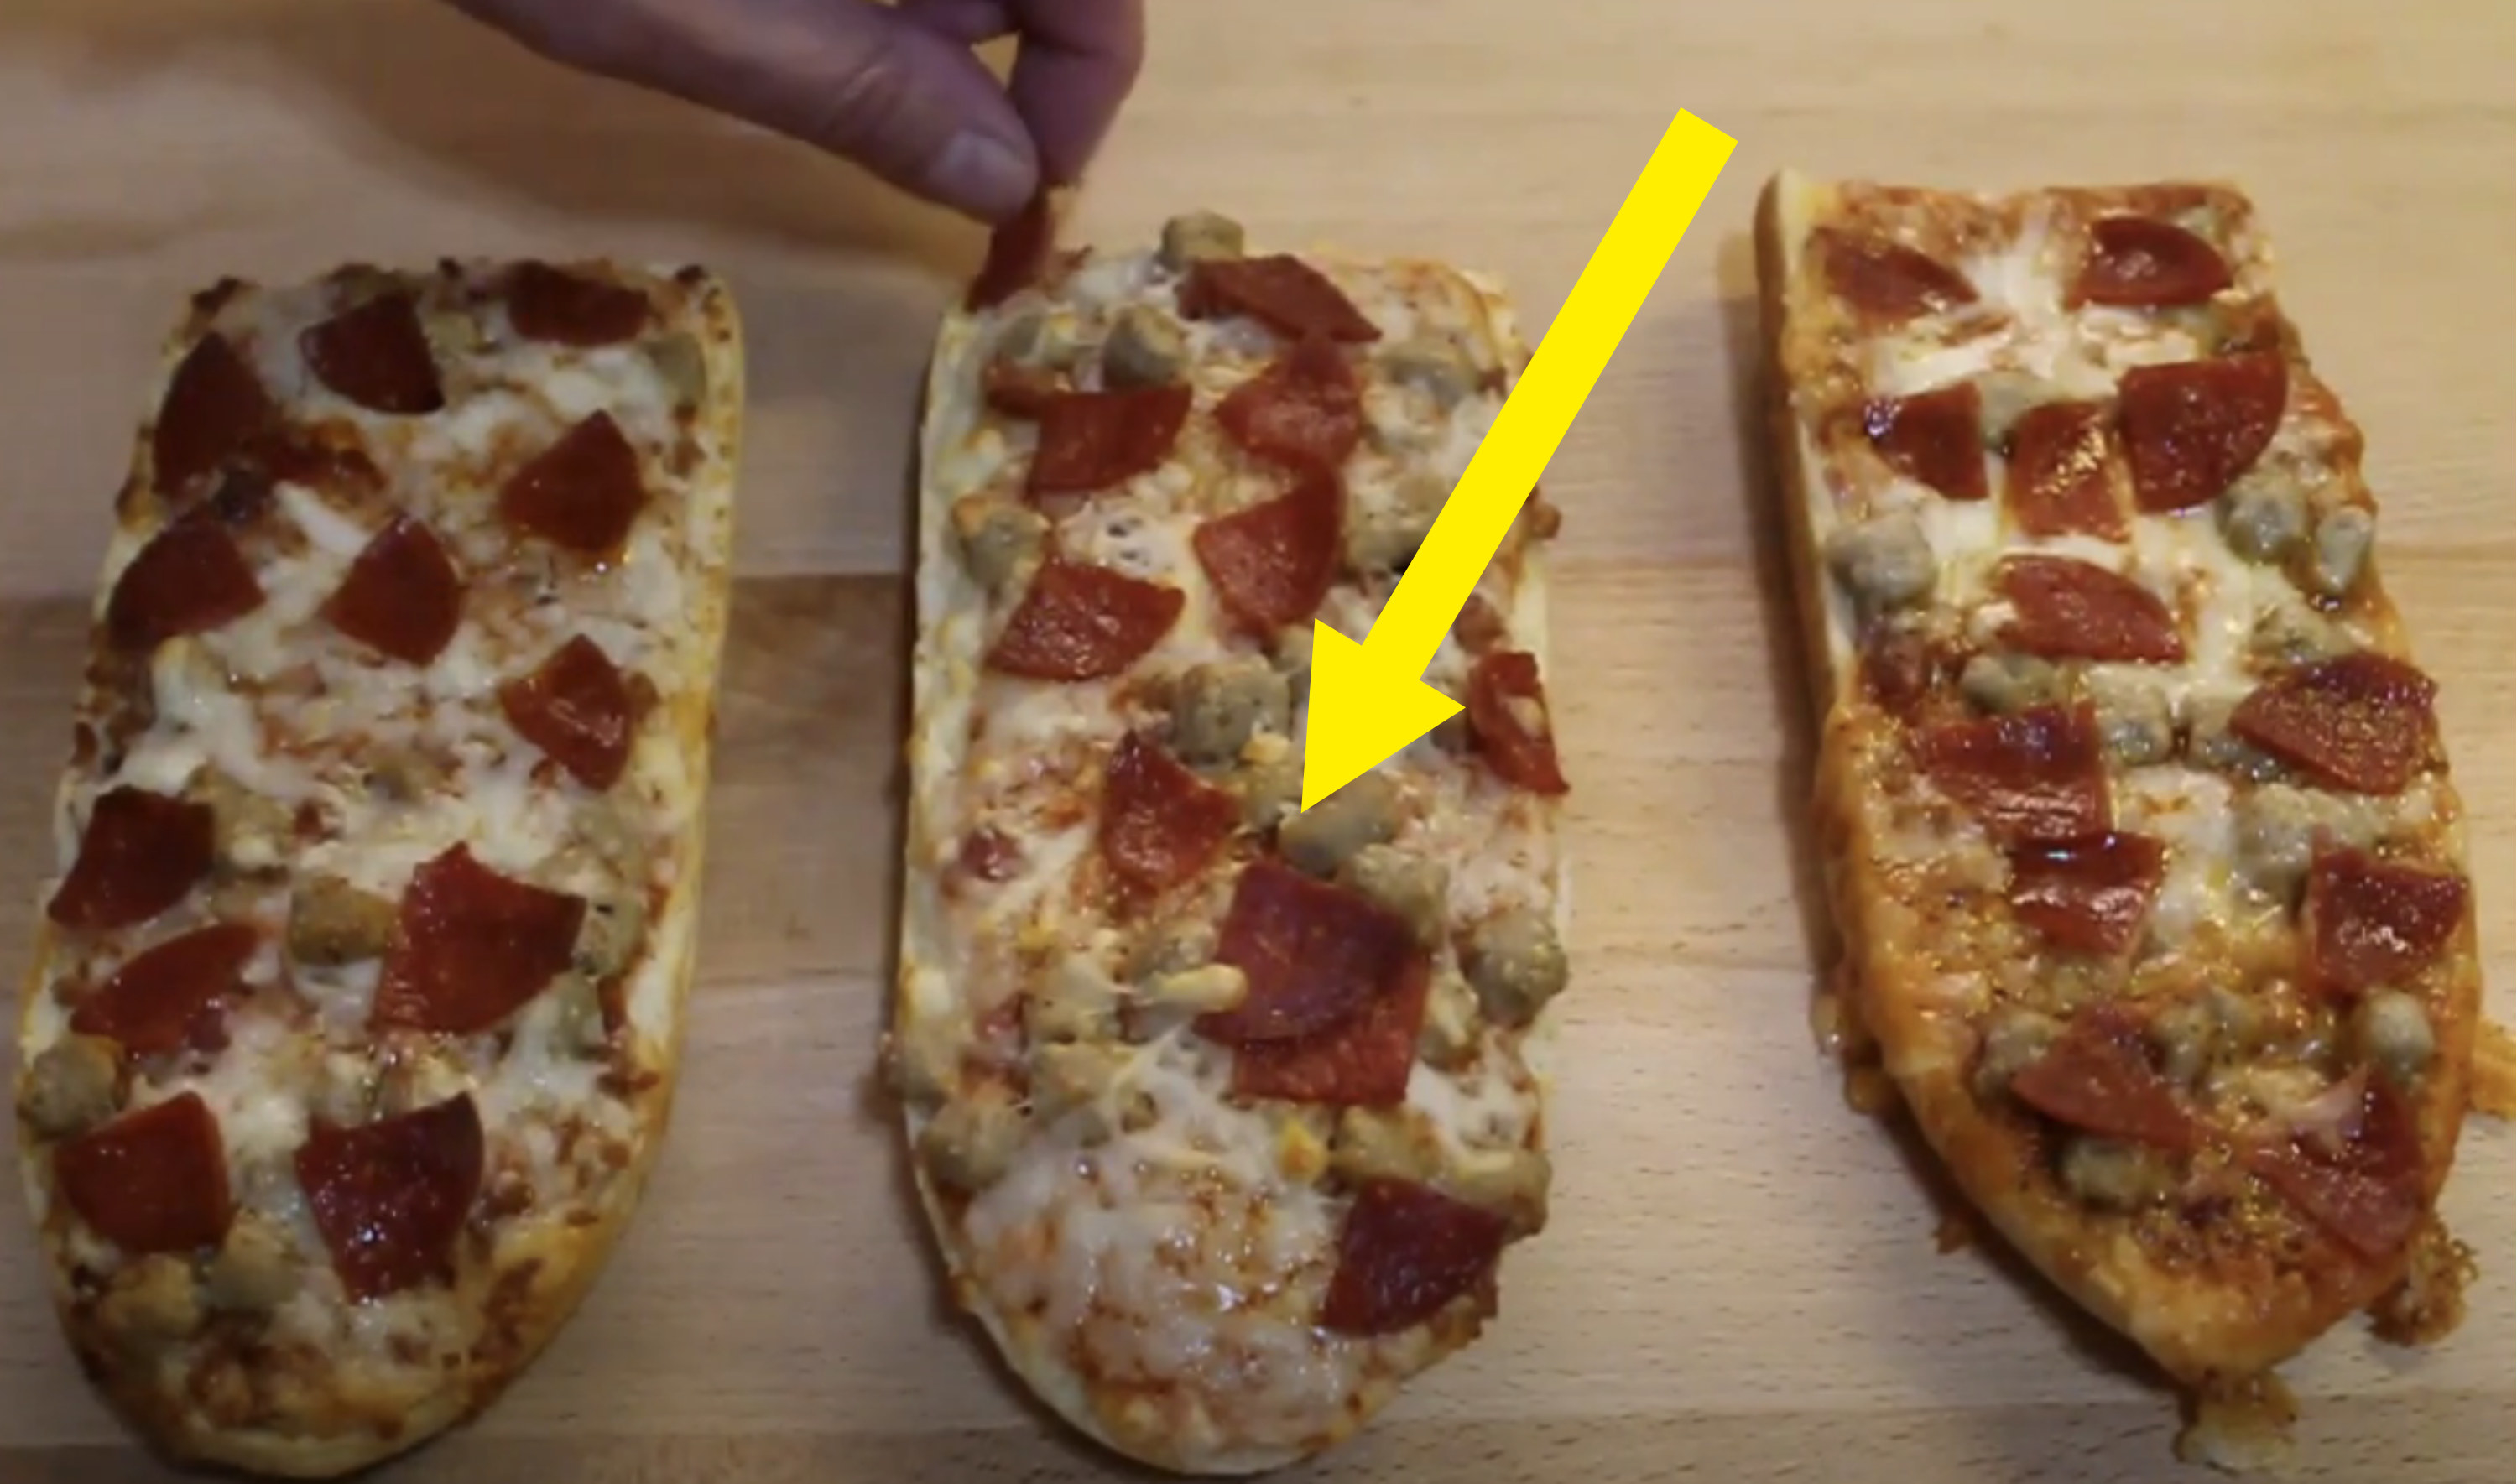 箭头指向法式面包披萨融化奶酪旁边金黄色的两个版本